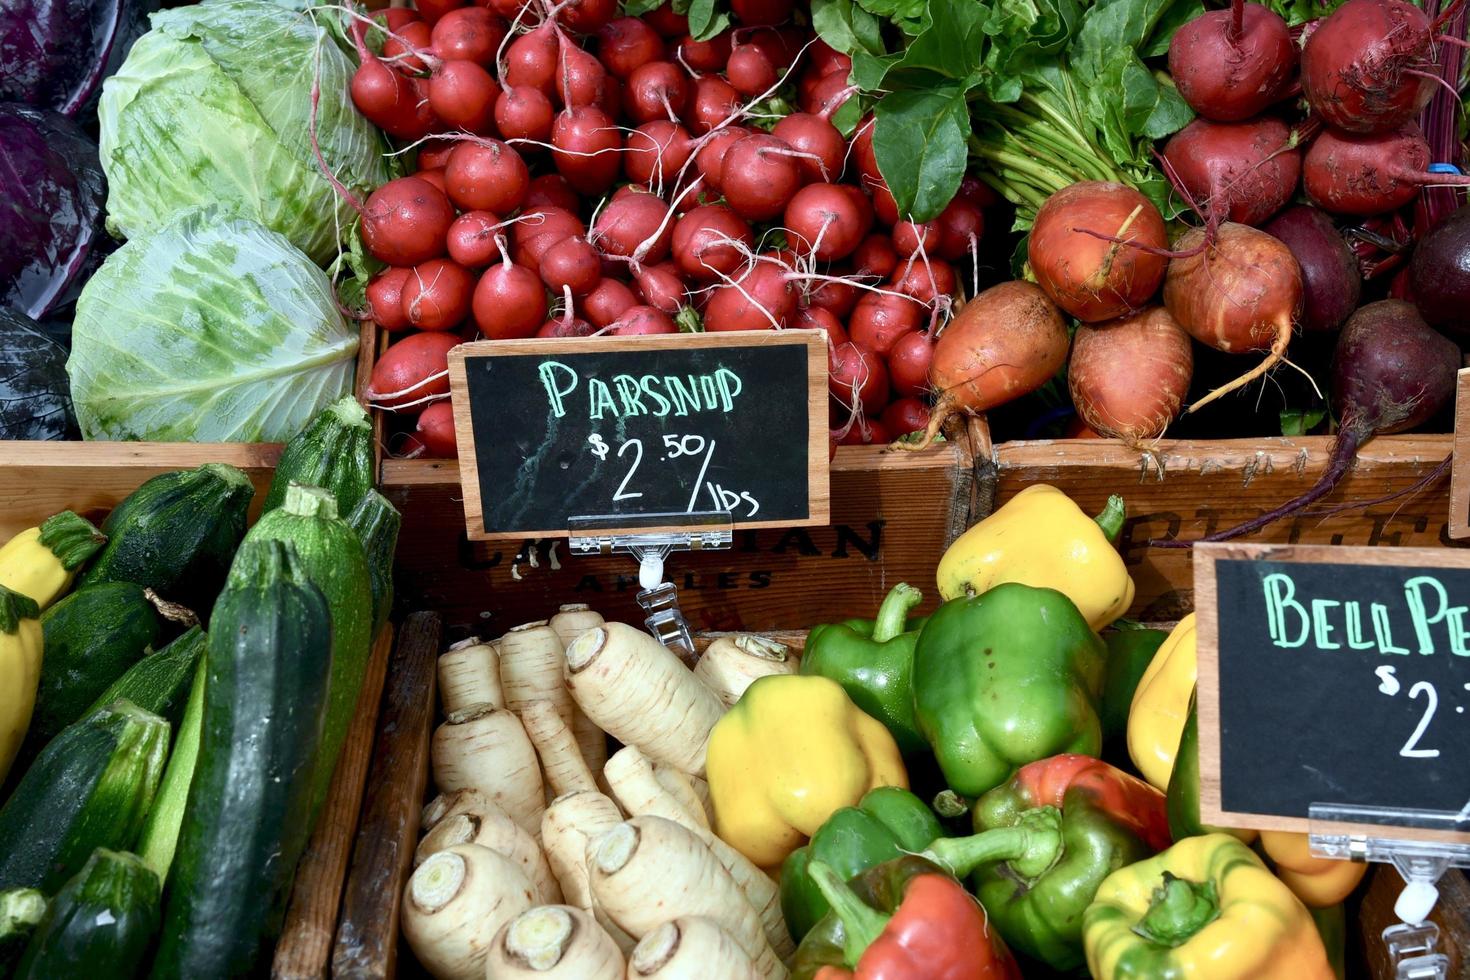 legumes frescos à venda em um mercado de agricultores foto